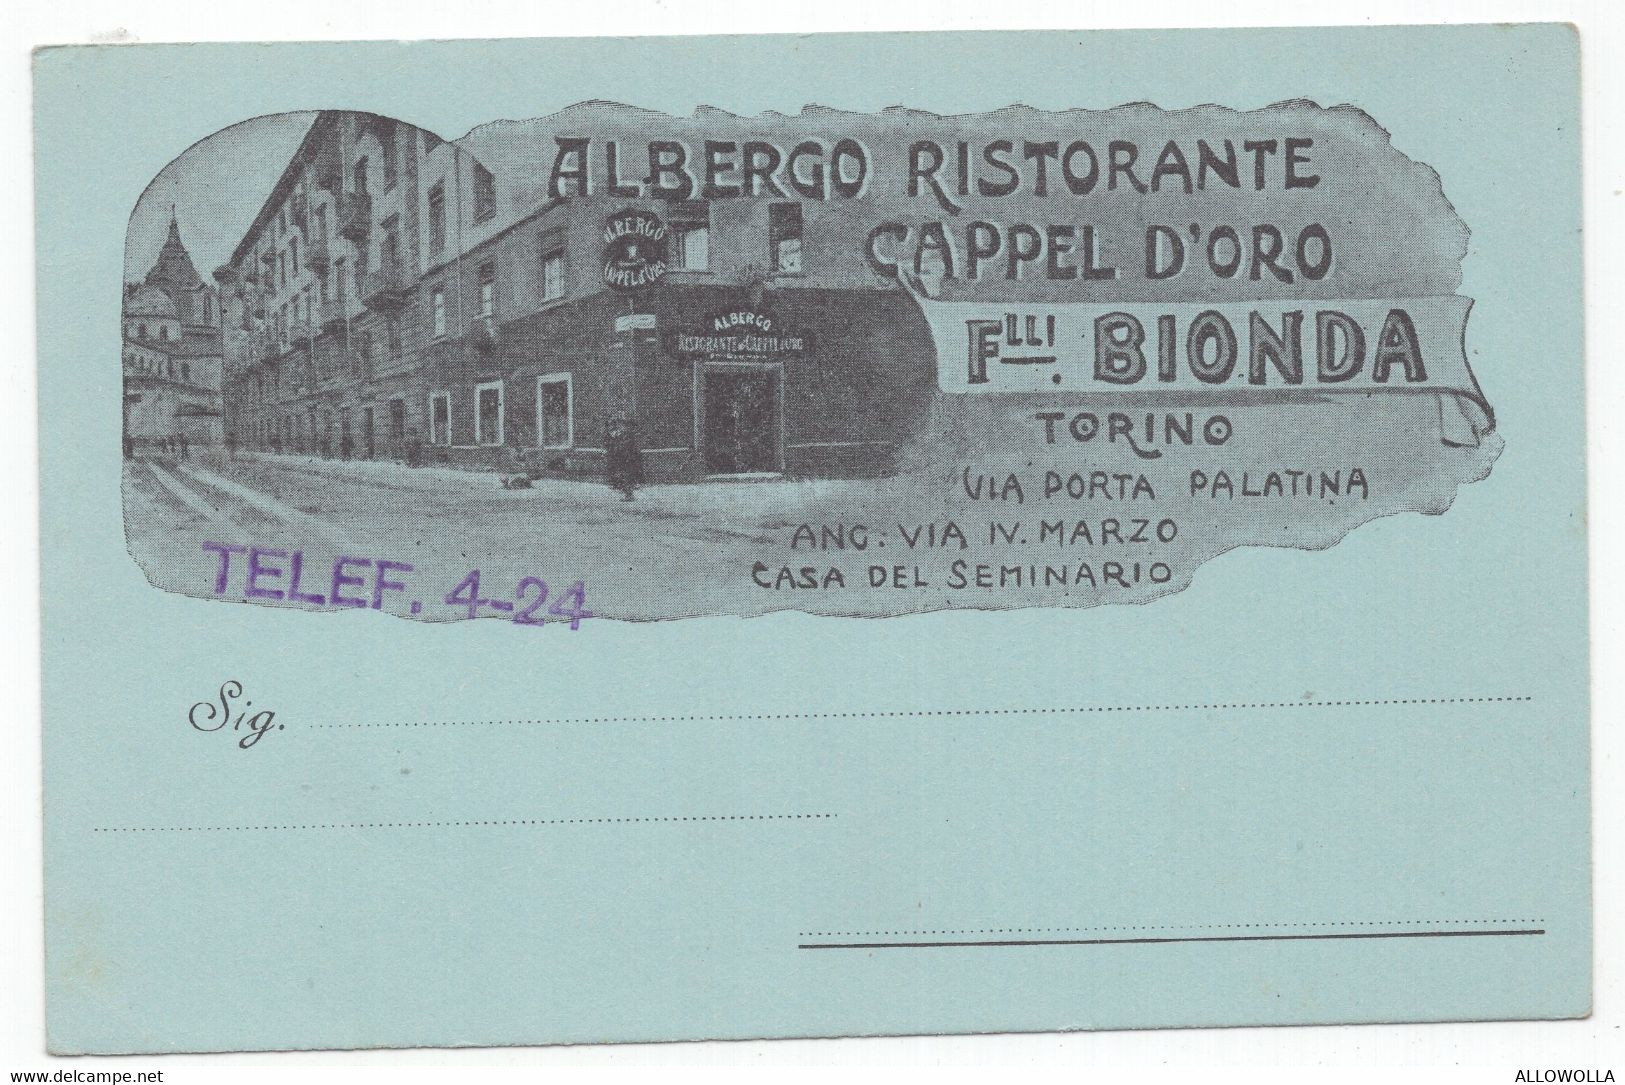 18507 " ALBERGO RISTORANTE CAPPEL D'ORO-F.LLI BIONDA-TORINO "VERA FOTO-CART. POST. NON SPED. - Bar, Alberghi & Ristoranti